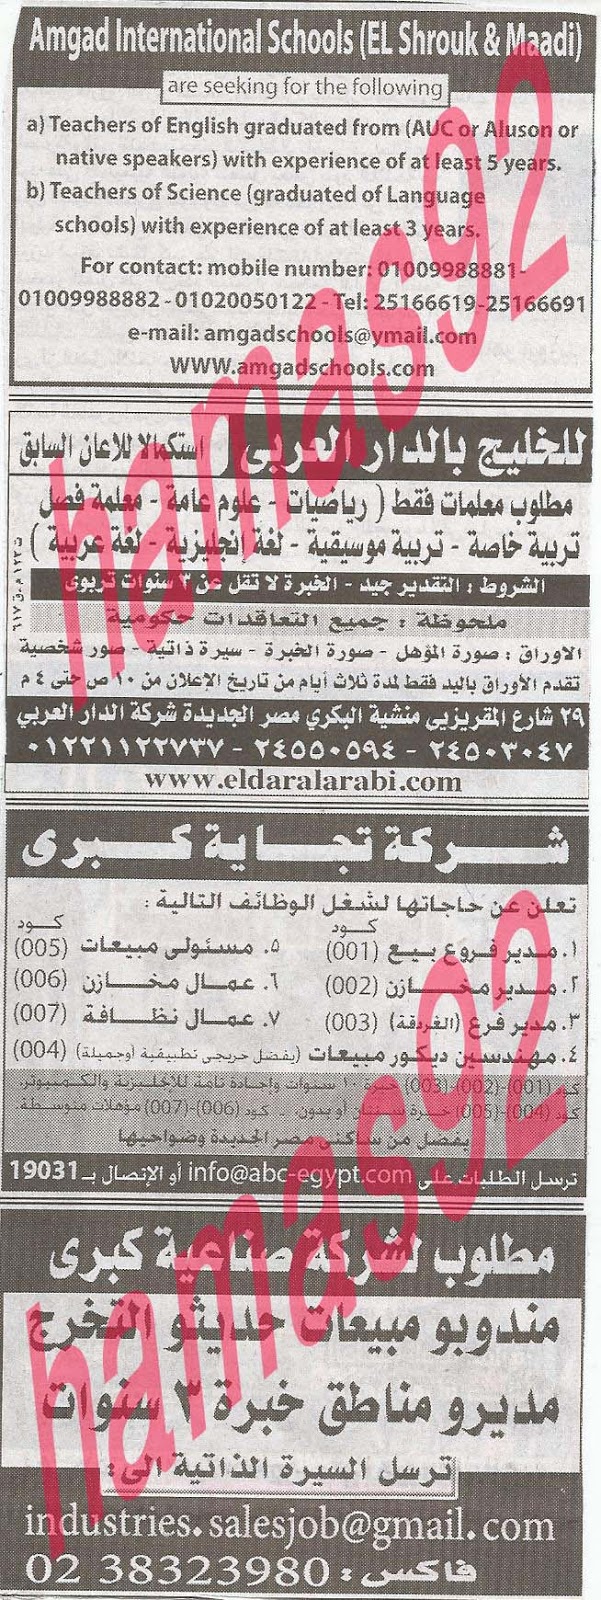 وظائف خالية فى جريدة الاهرام الجمعة 26-07-2013 4